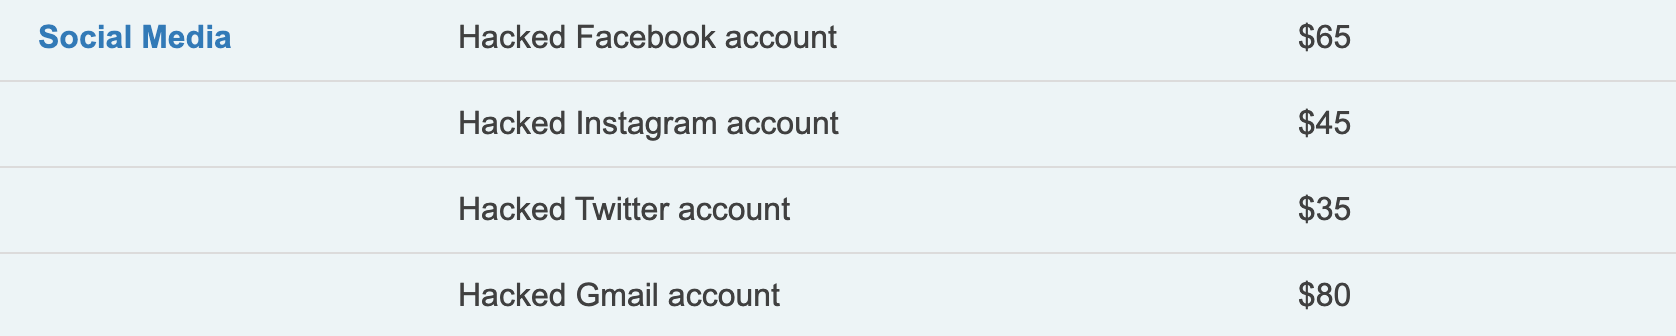 hacked accounts